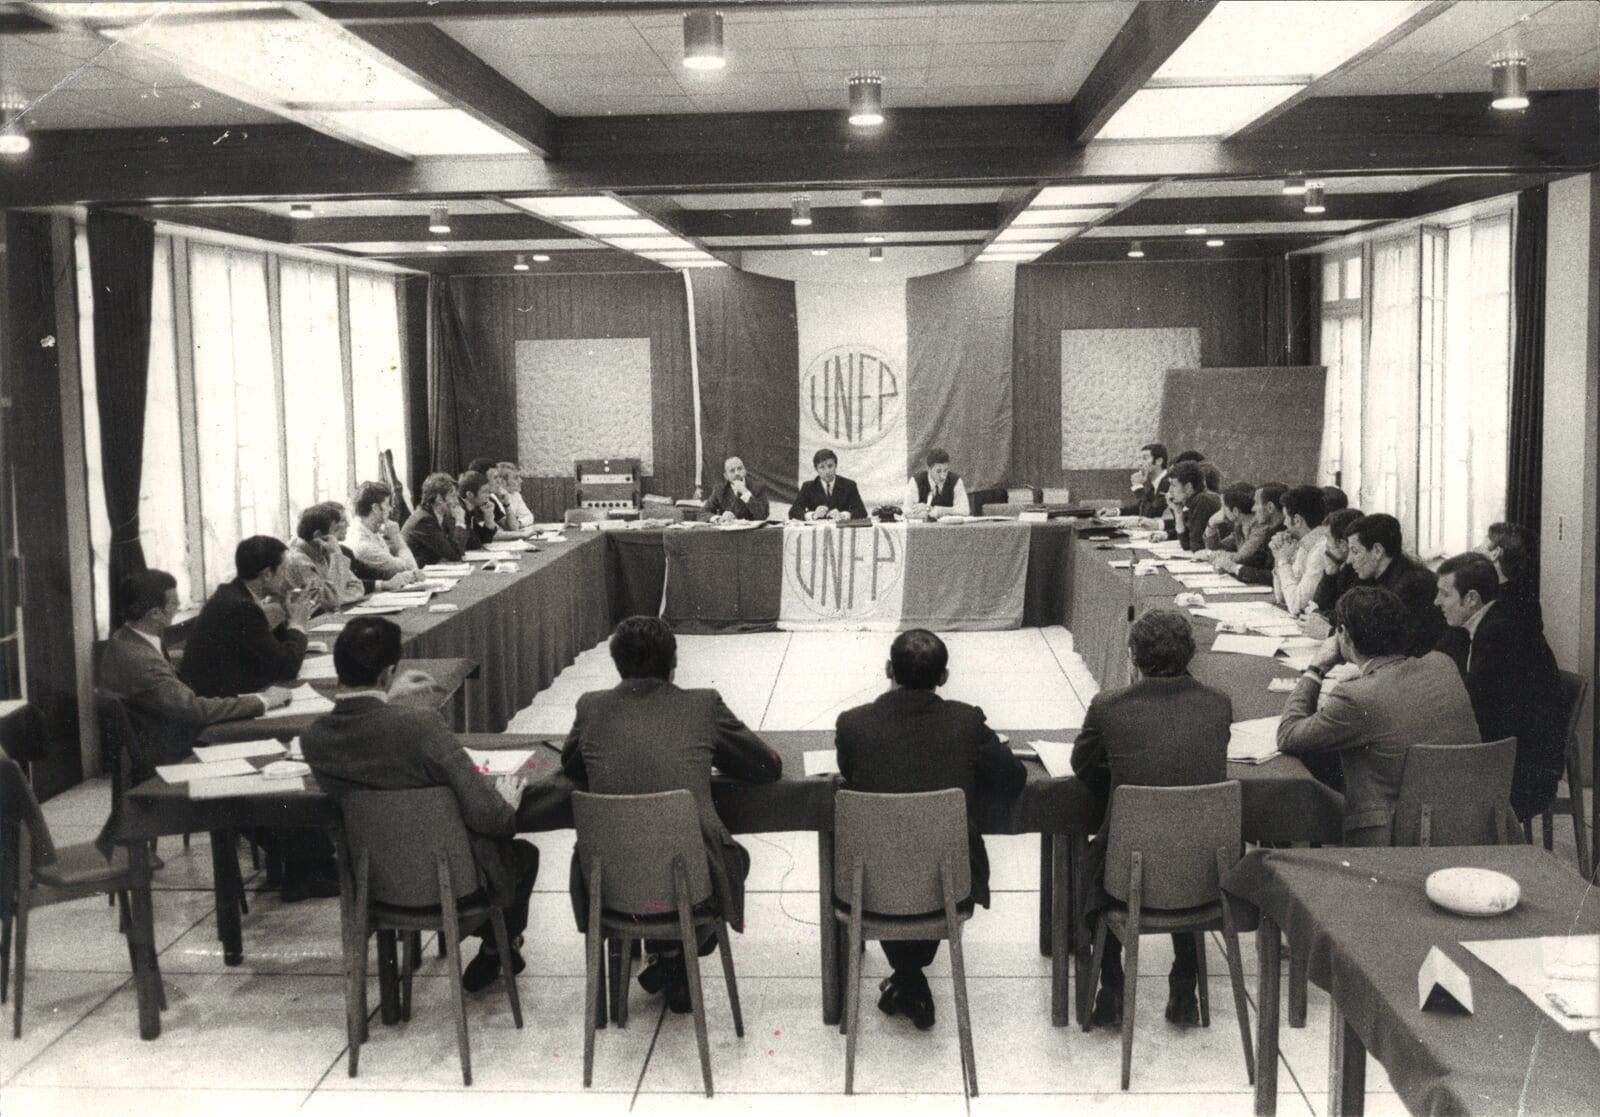 1969, Assemblée générale de l'UNFP, au centre de gauche à droite : Jacques Bertrand, Michel Hidalgo et Bruno Bollini